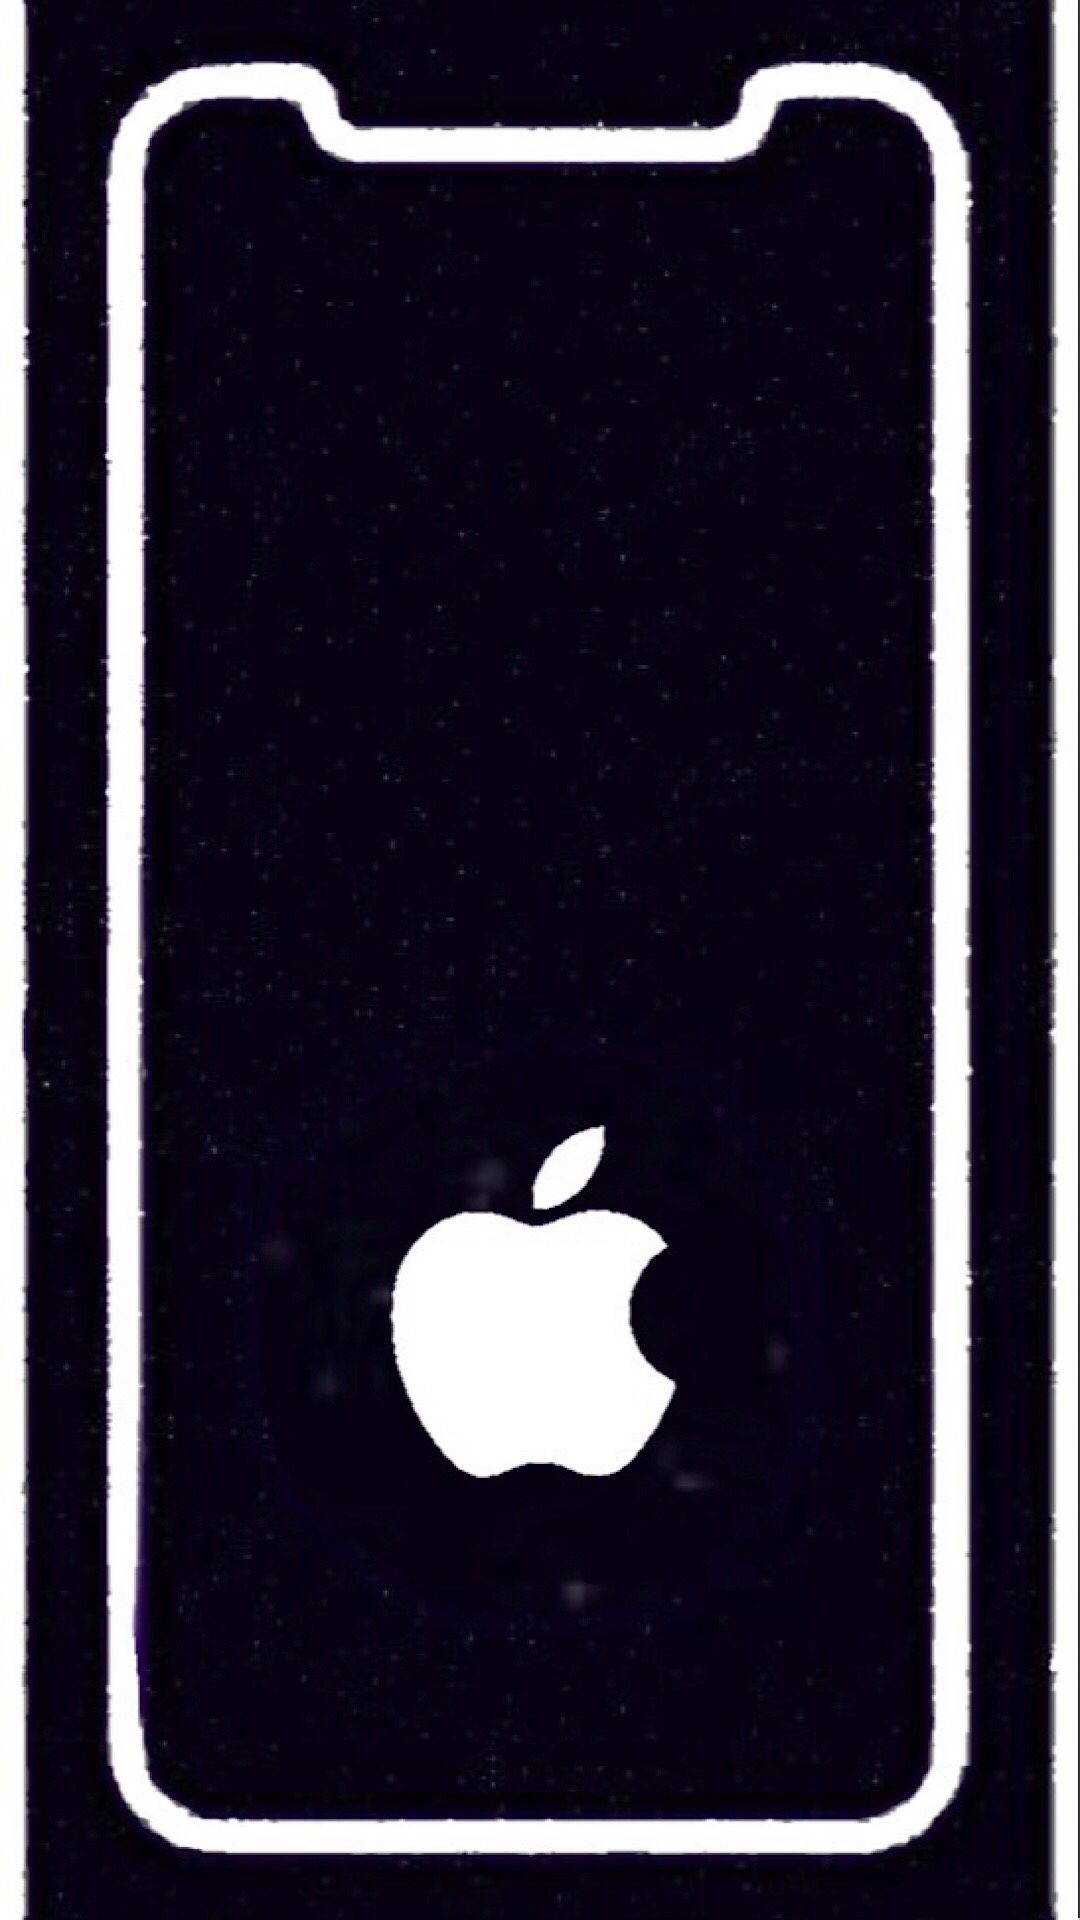 New iPhone Wallpaper. iPhone Wallpaper. iPhone wallpaper, Apple wallpaper, Wallpaper border